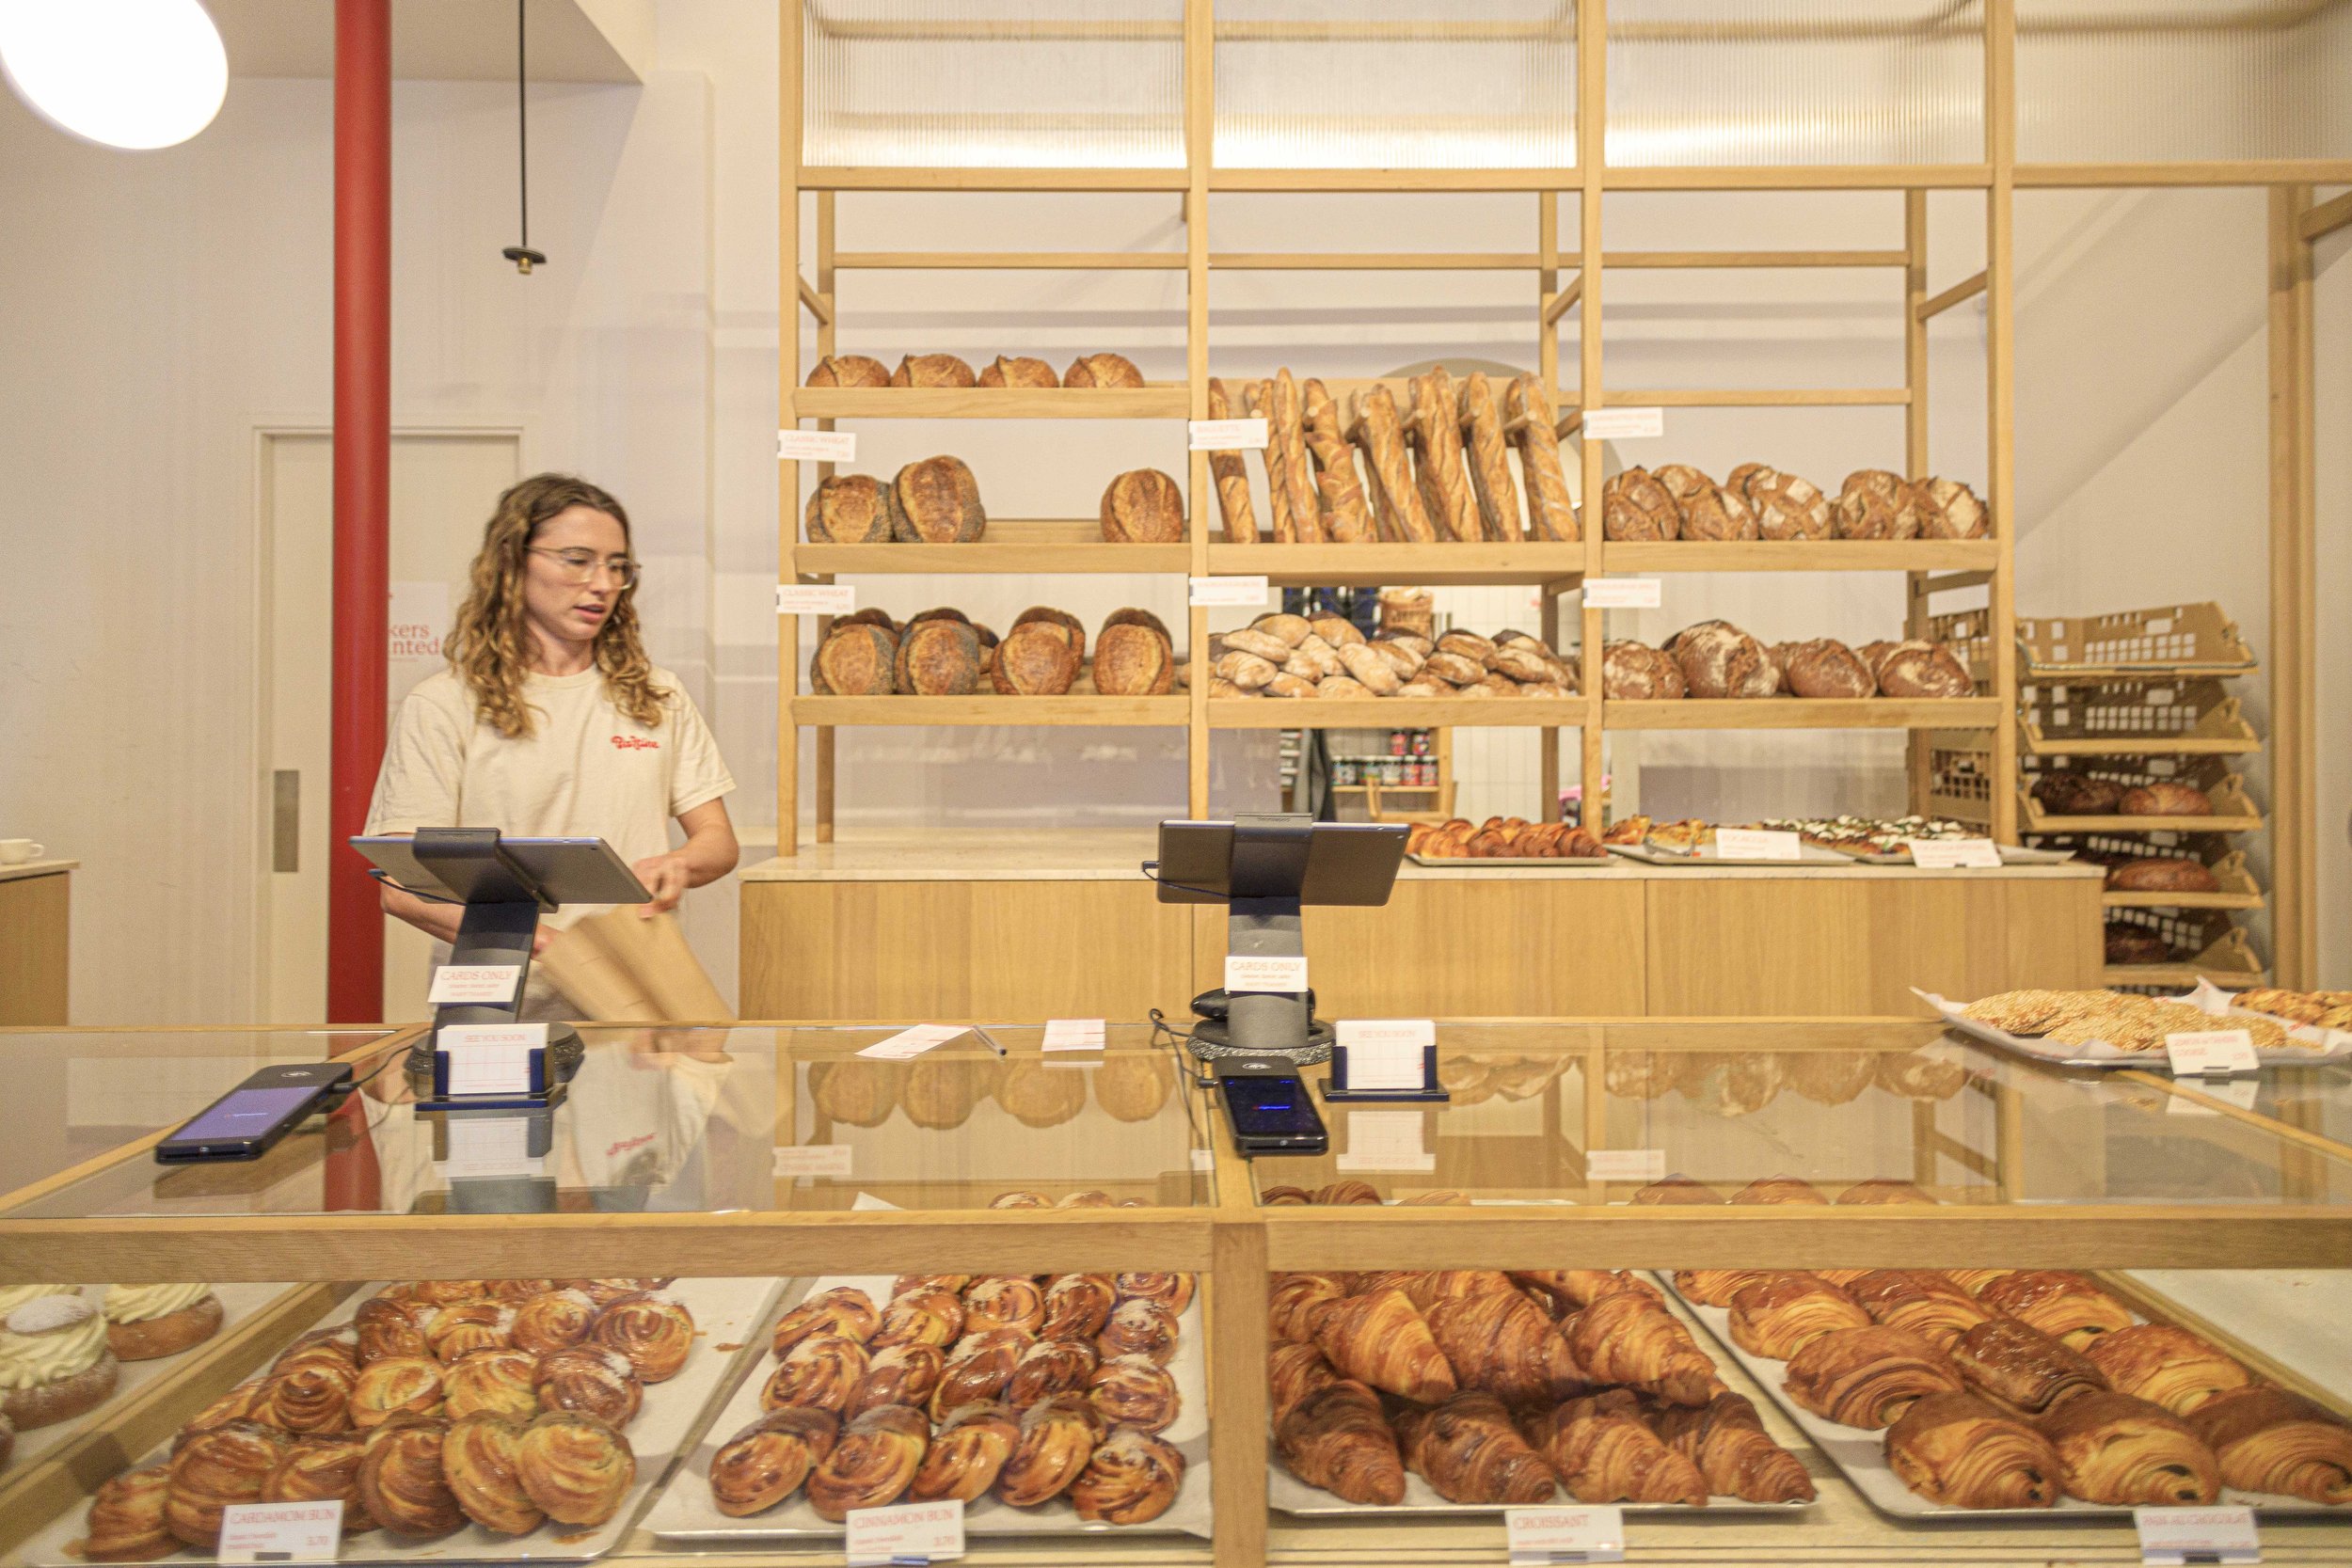 Bartine Bakery & Market | De Buik van Den Haag-12.jpg